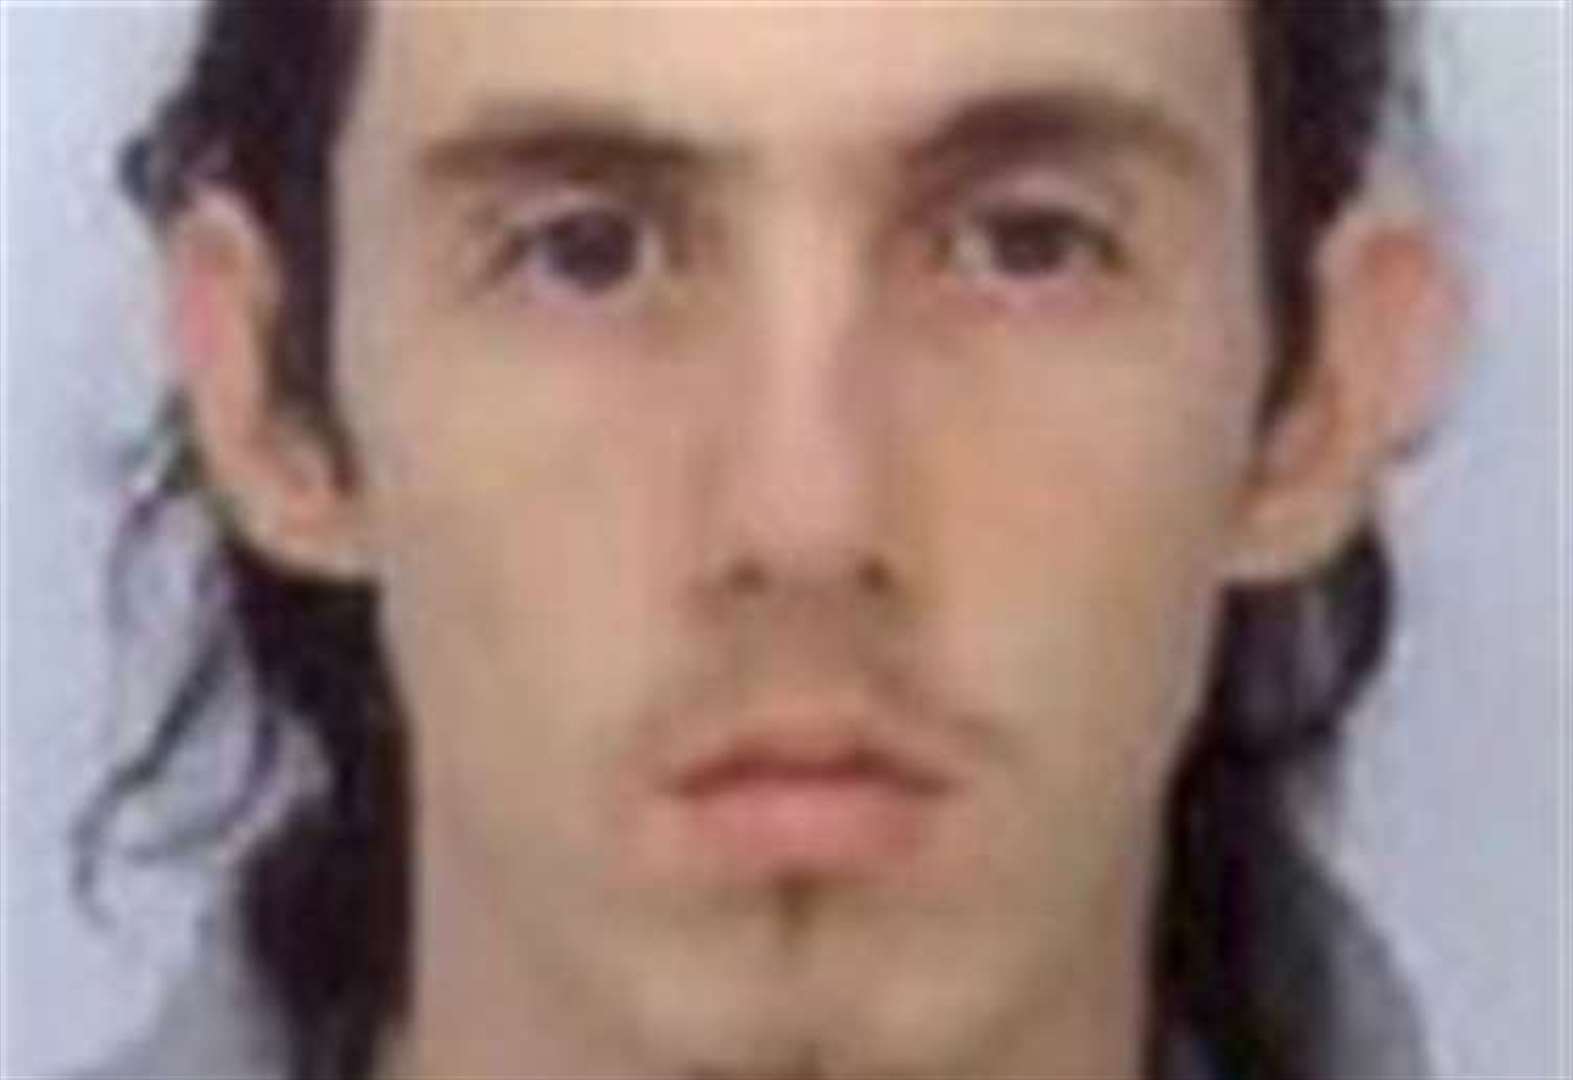 Paedophile found dead in prison cell